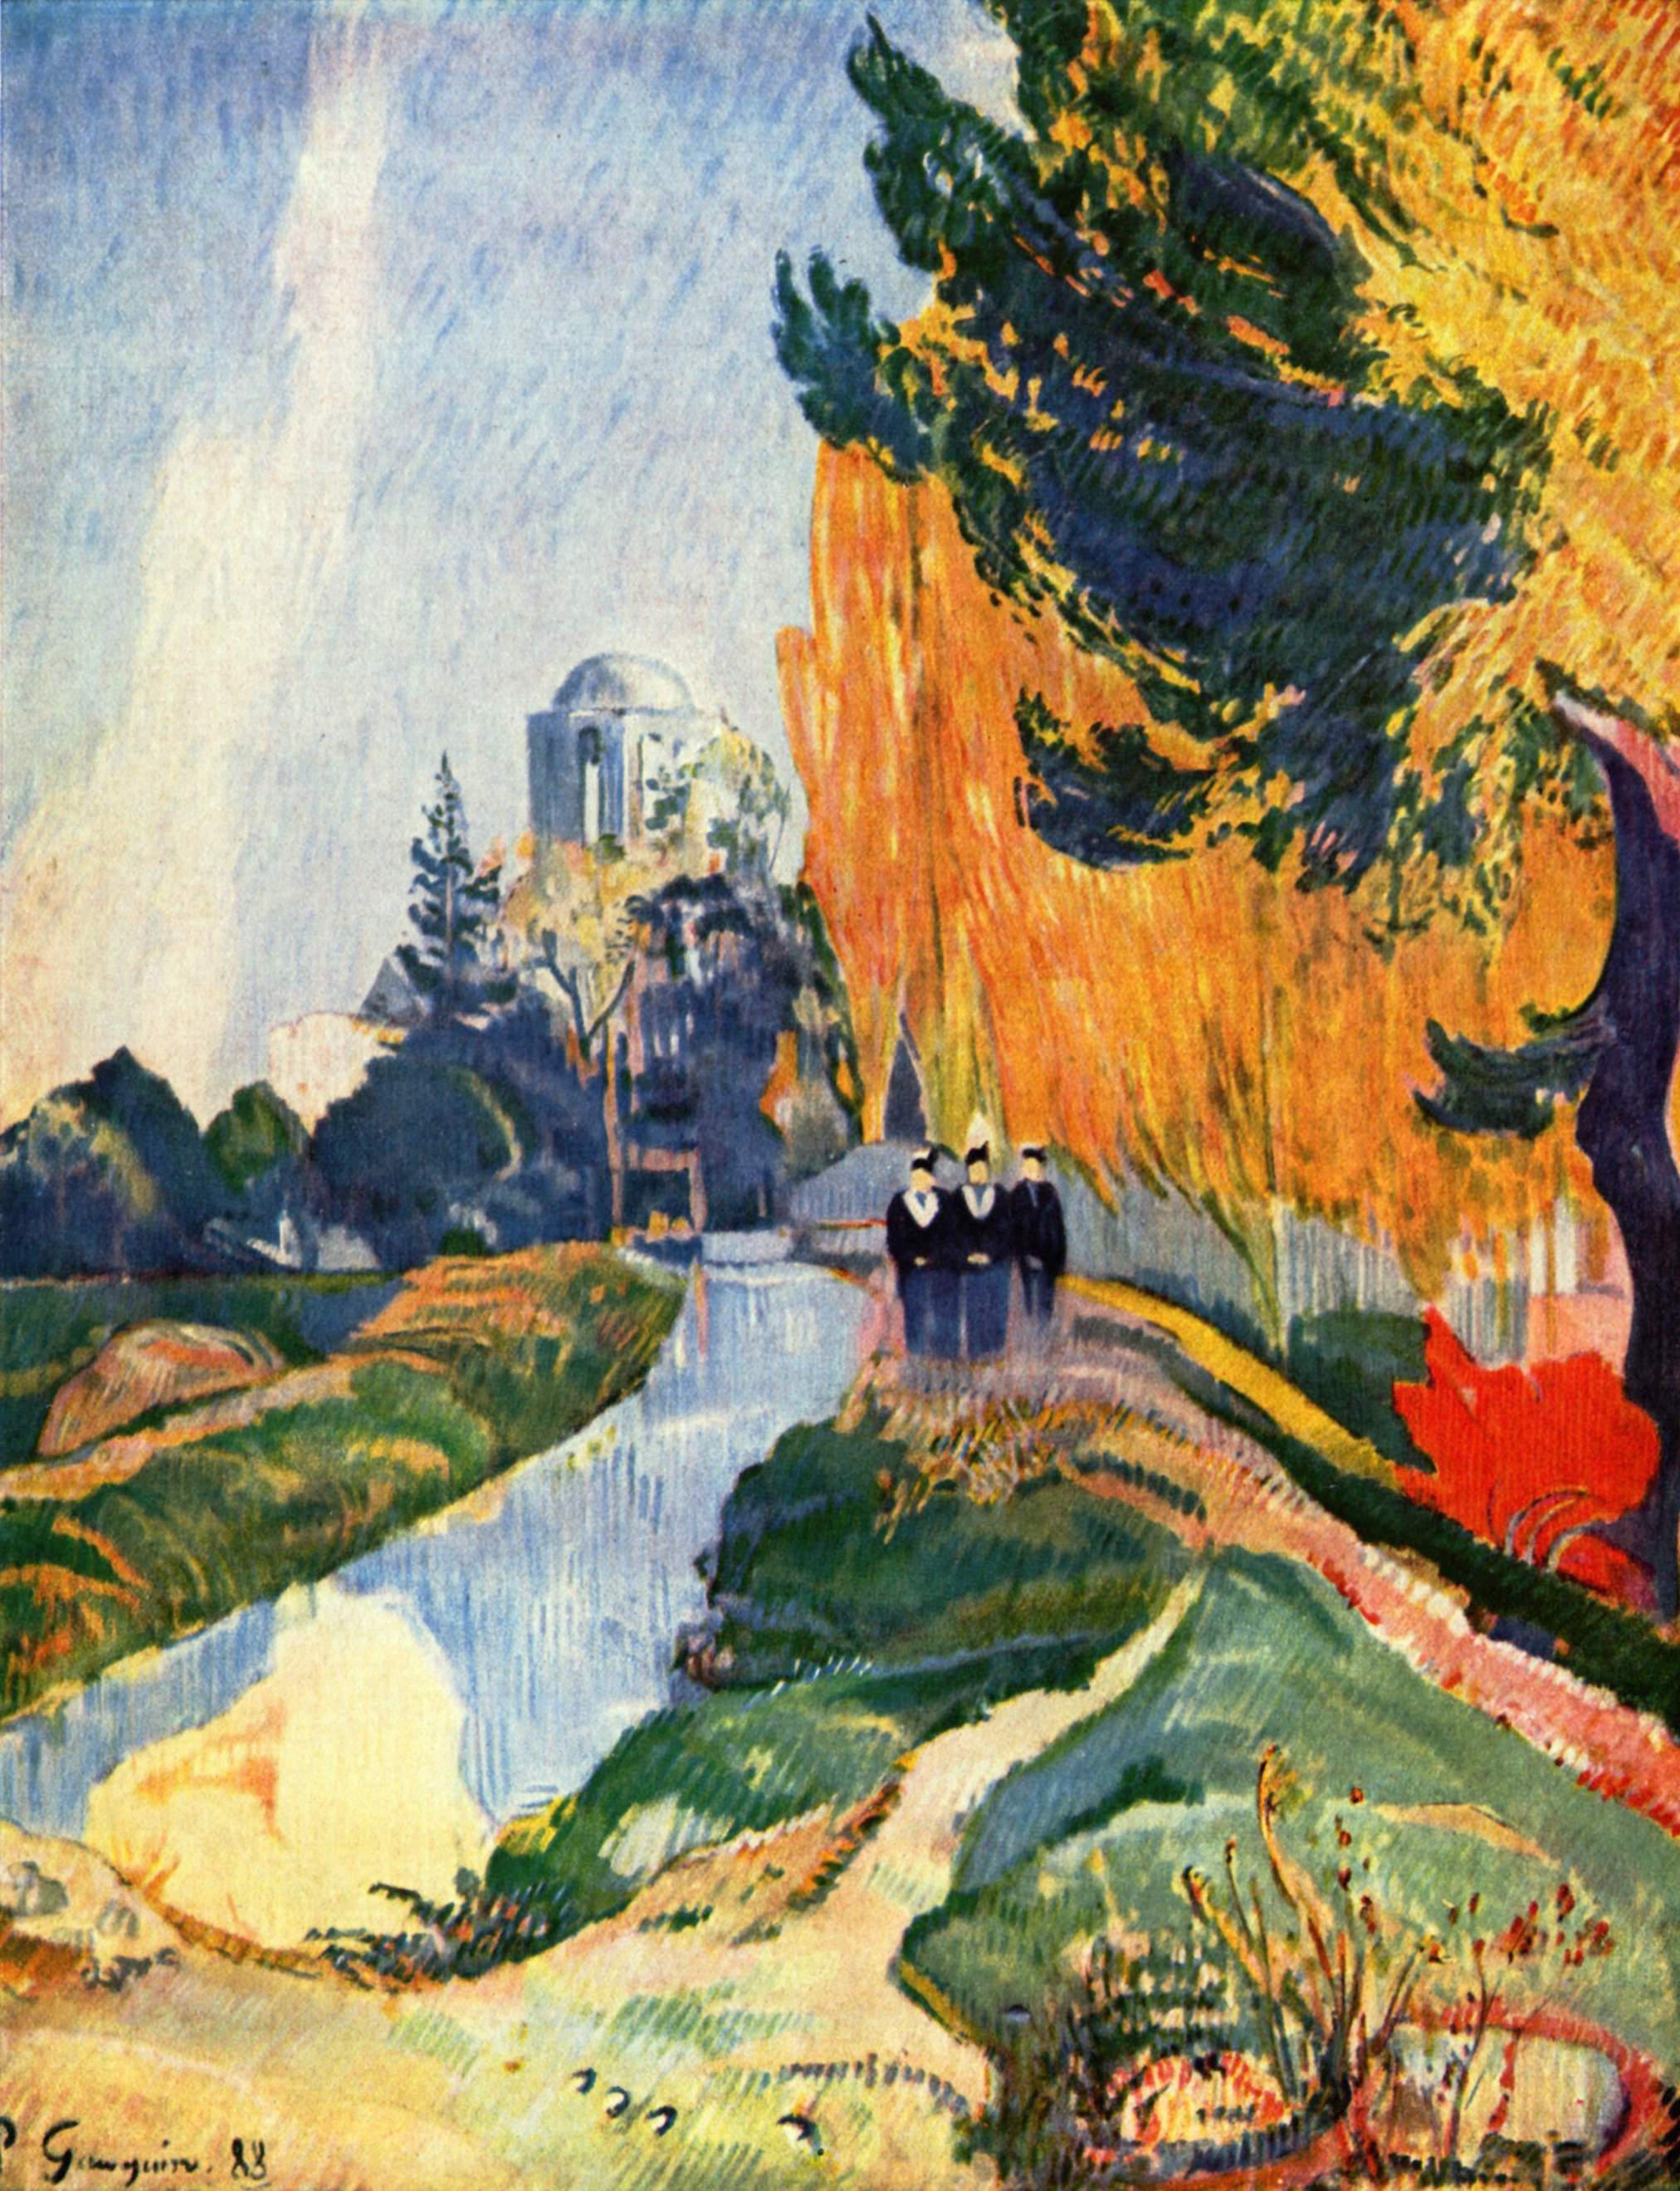 Les Alyscamps by Paul Gauguin - 1888 - 91,6 × 72,5 cm Musée d'Orsay